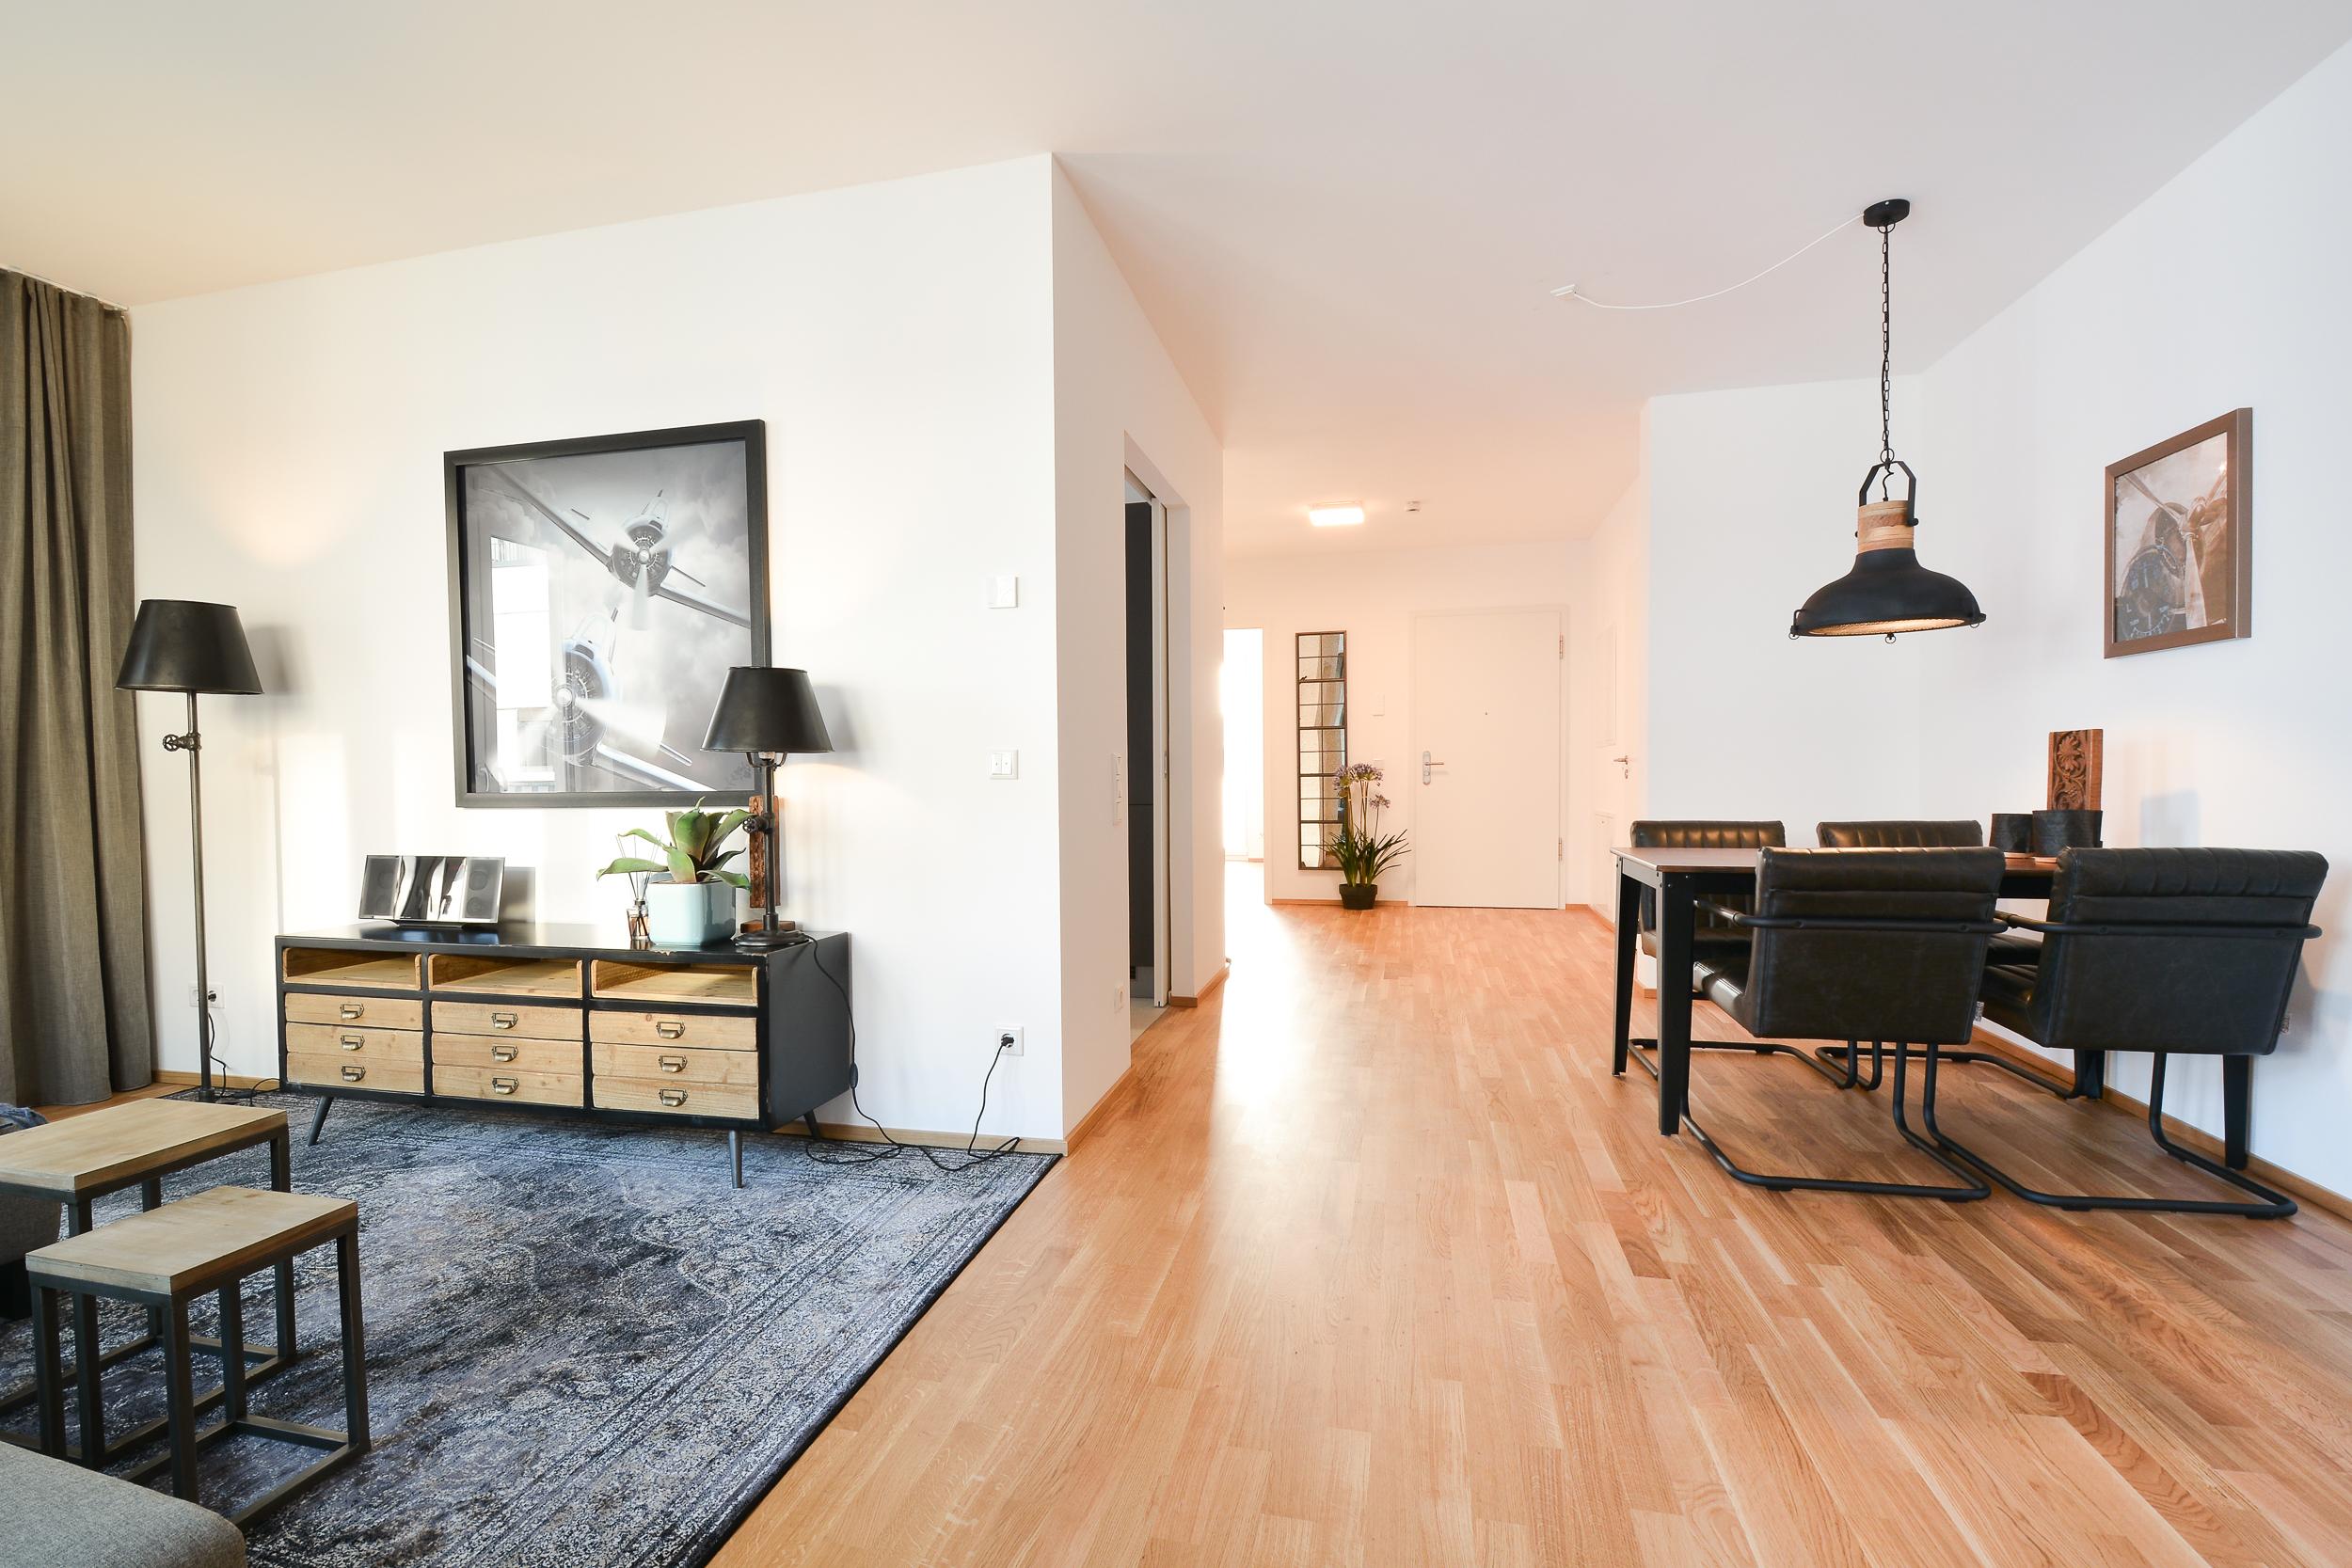 Esszimmer/Wohnzimmer/Flur #industrialdesigntisch #zimmergestaltung ©Luna Homestaging